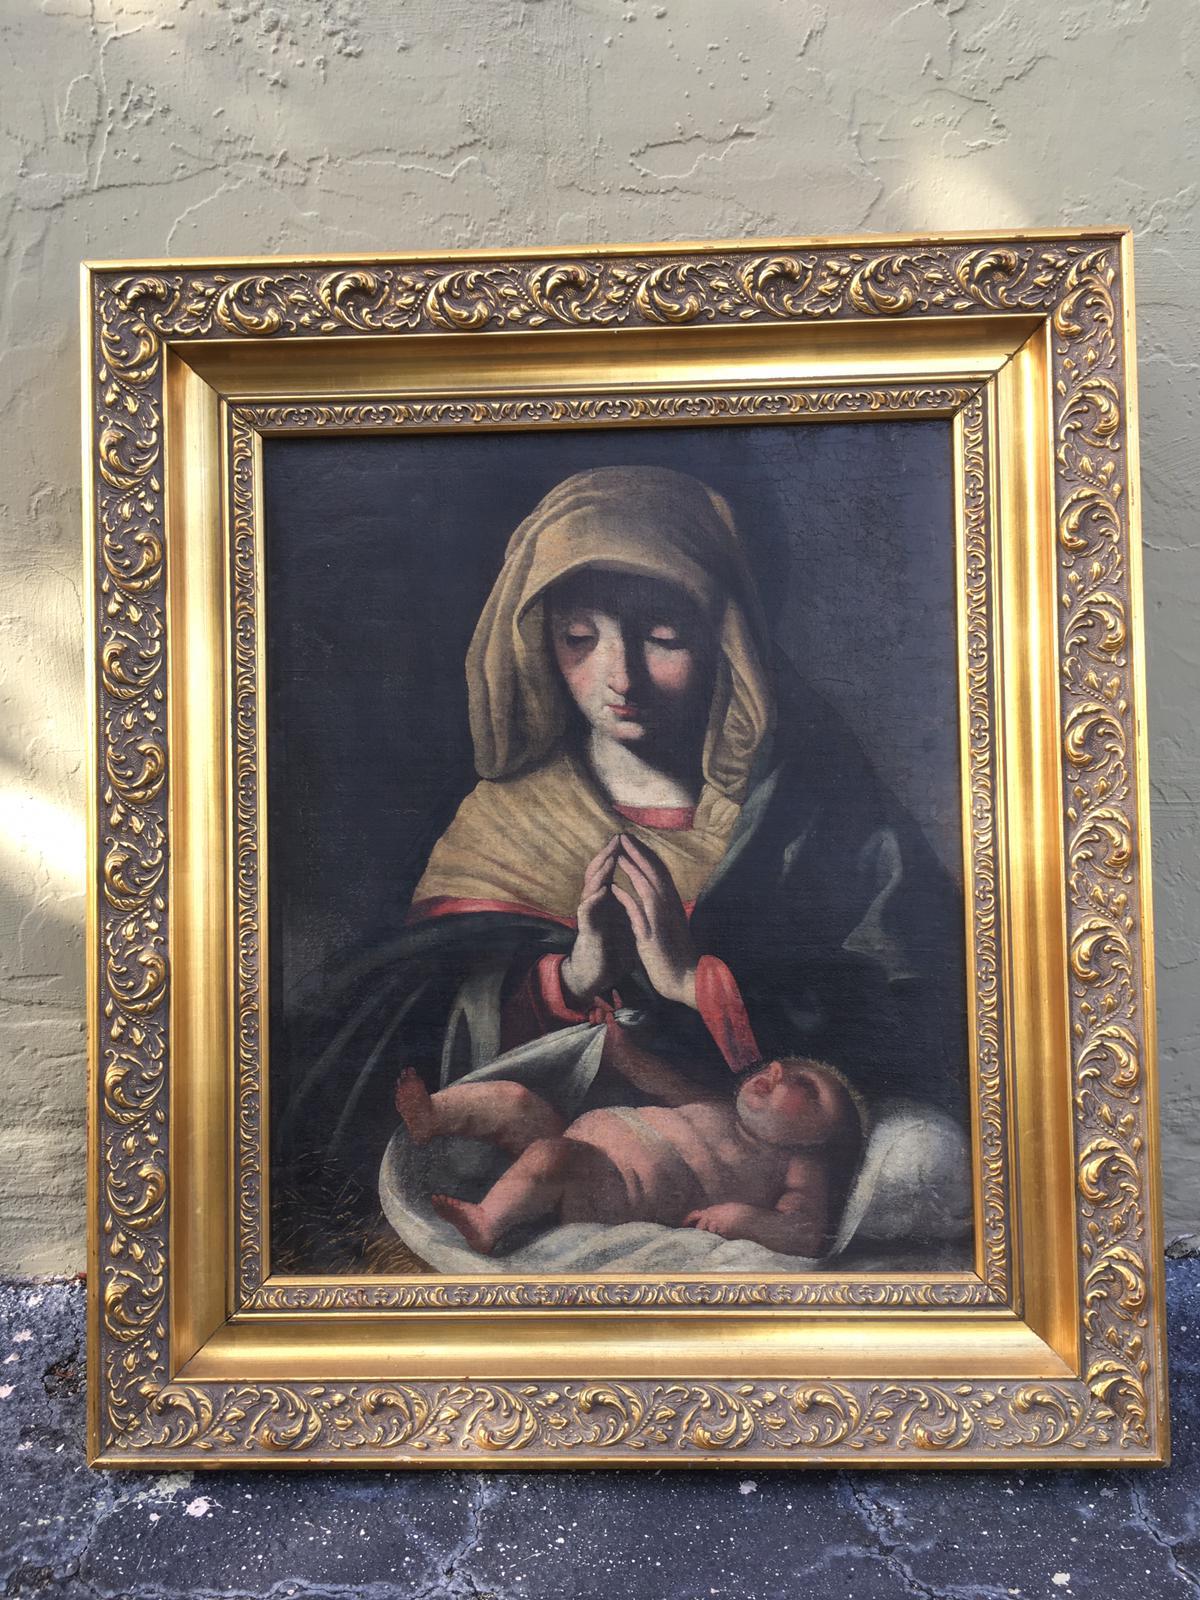 Madone et enfant, peinture classique du 19ème siècle.
Cette belle peinture à l'huile a été achetée en Espagne.
L'artiste est inconnu.
Le tableau a conservé sa finition originale et n'a pas été retouché.
Le cadre en bois est bien visible.